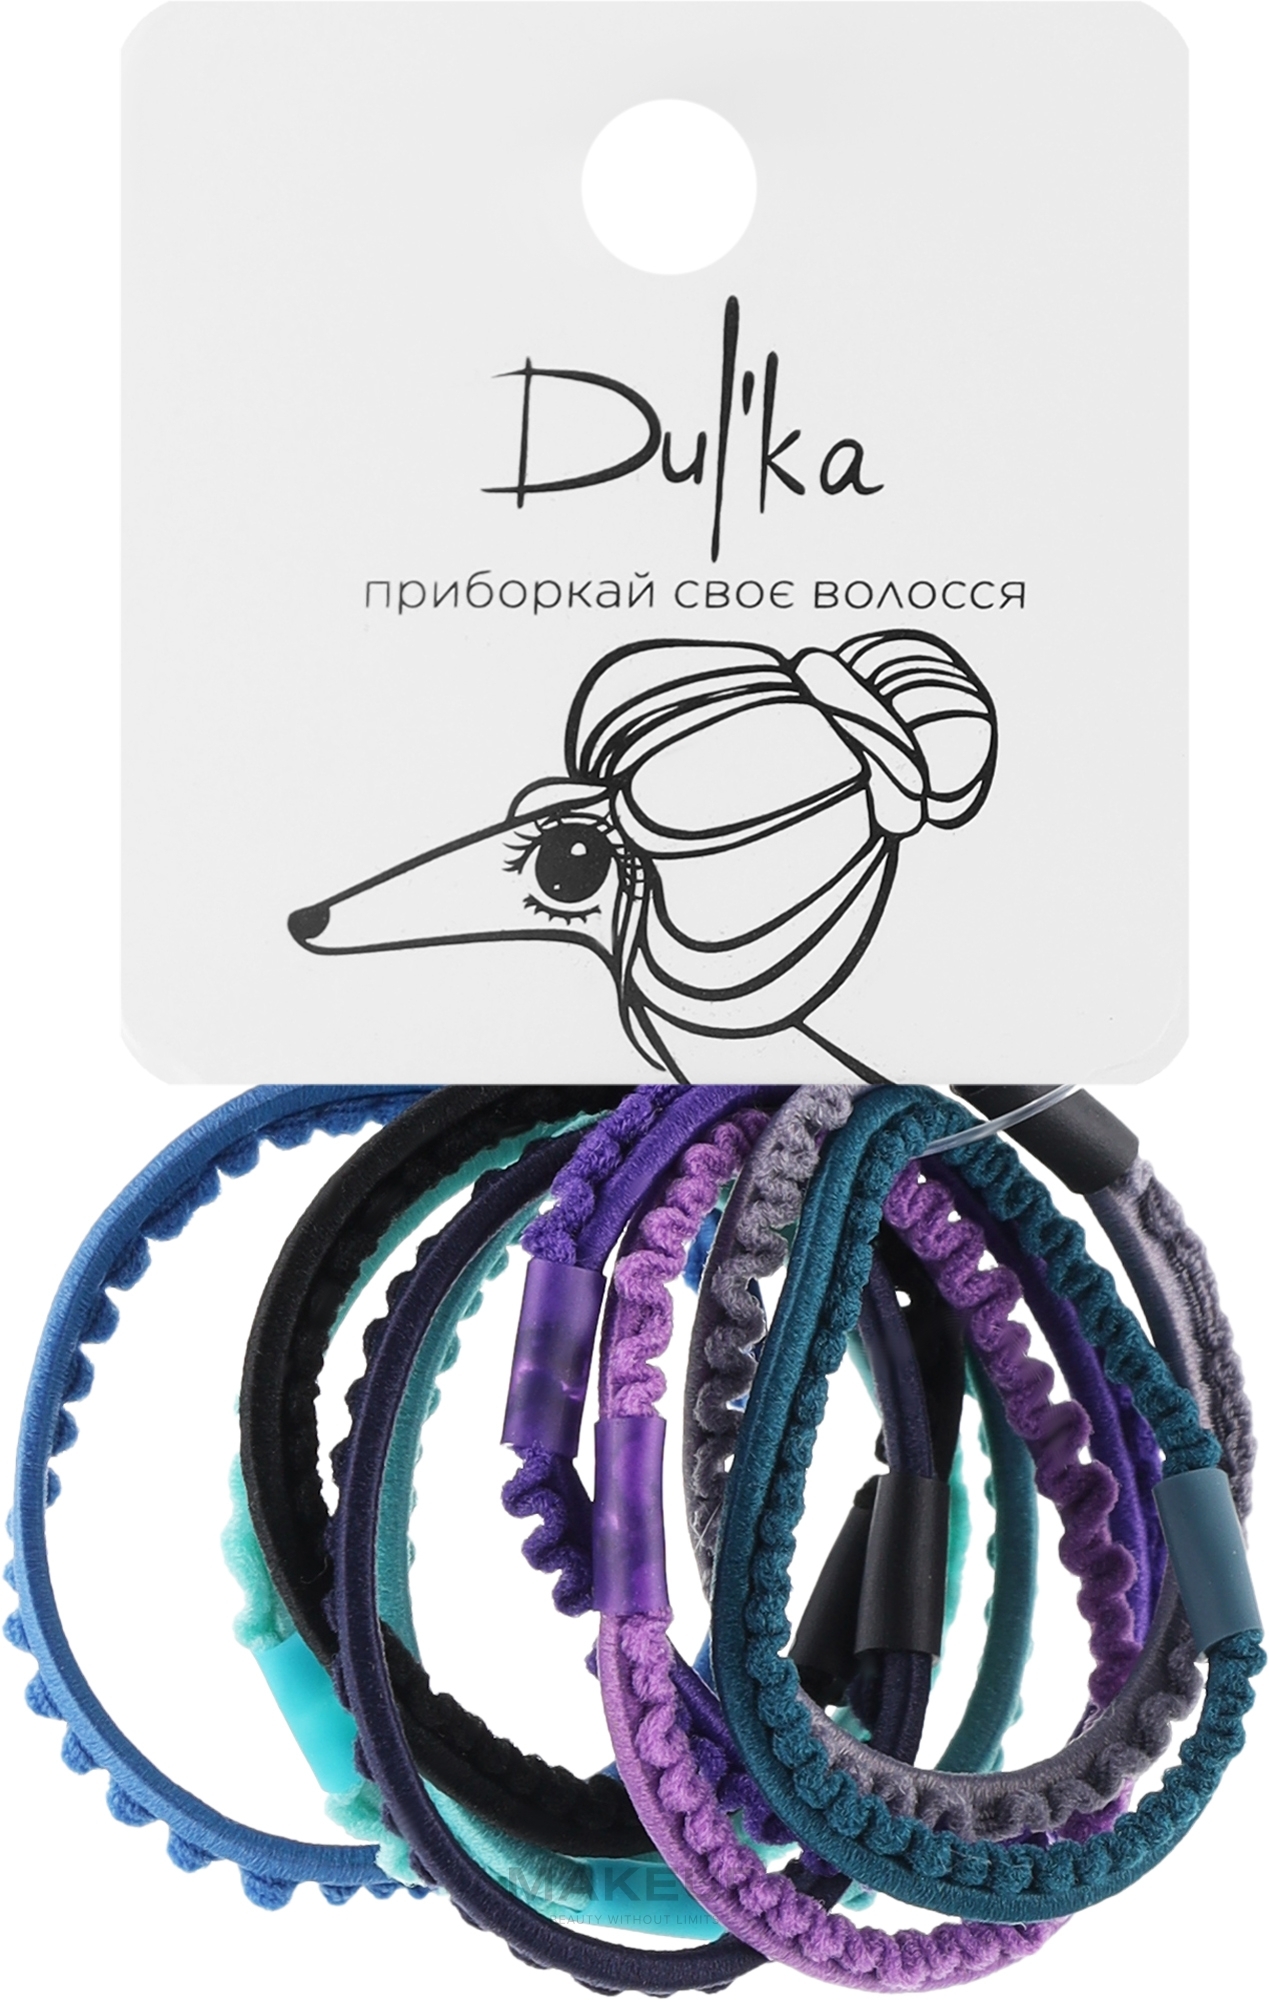 Набор разноцветных резинок для волос UH717718, 9 шт - Dulka  — фото 9шт